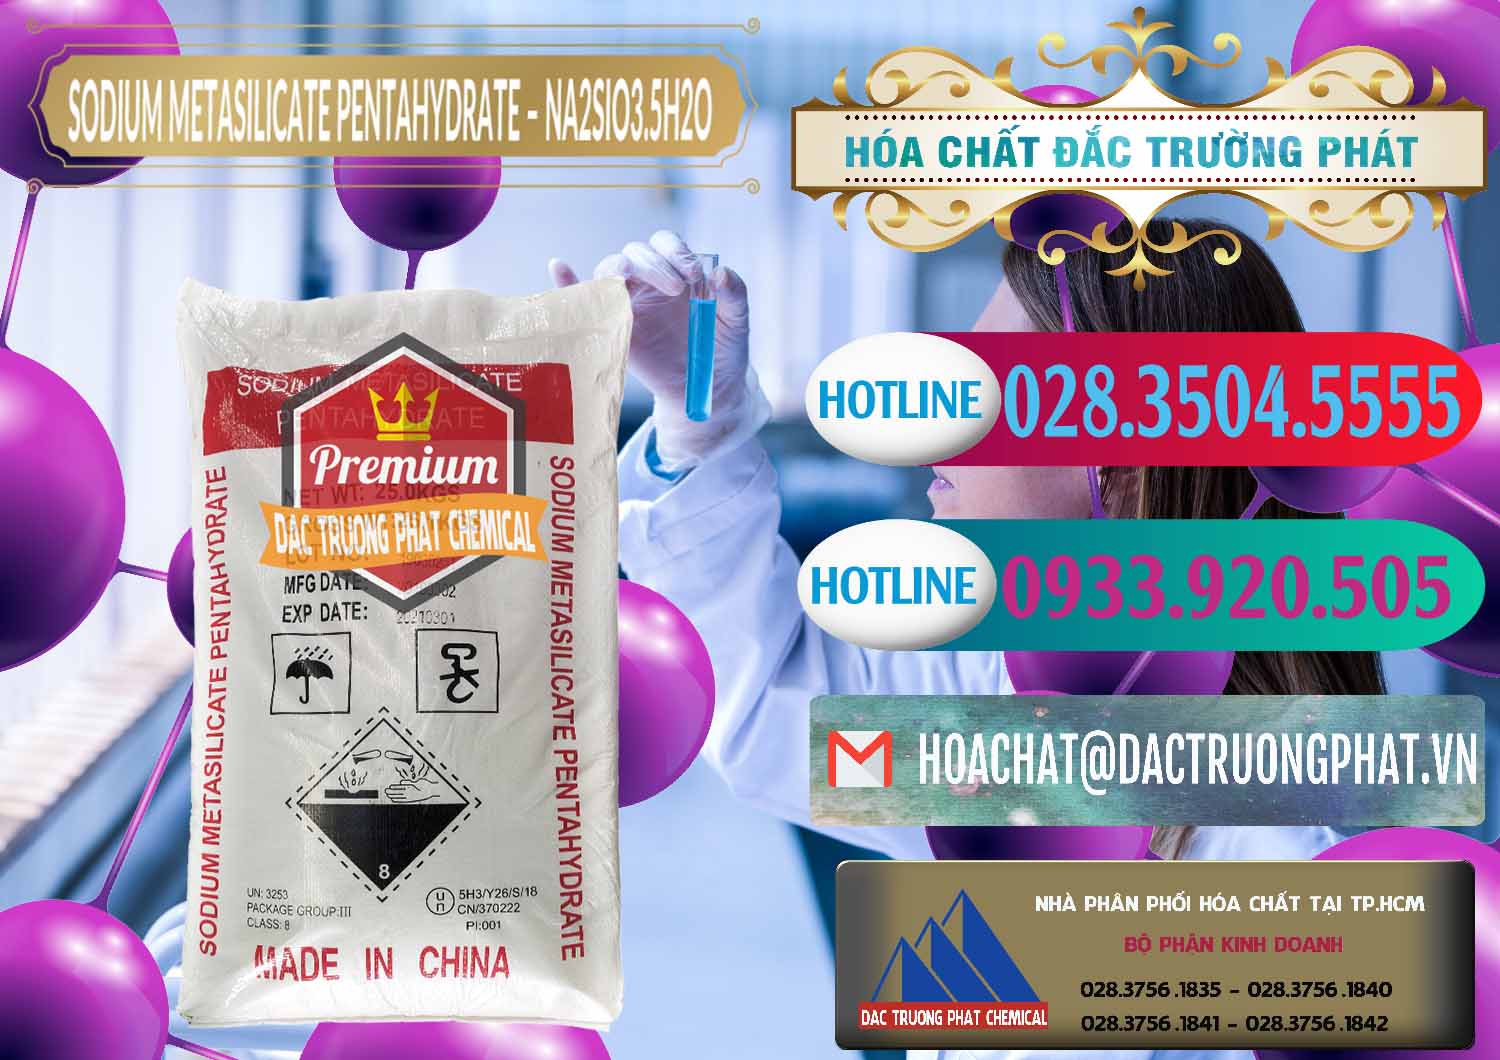 Đơn vị chuyên cung cấp & bán Sodium Metasilicate Pentahydrate – Silicate Bột Trung Quốc China - 0147 - Cty kinh doanh - phân phối hóa chất tại TP.HCM - truongphat.vn